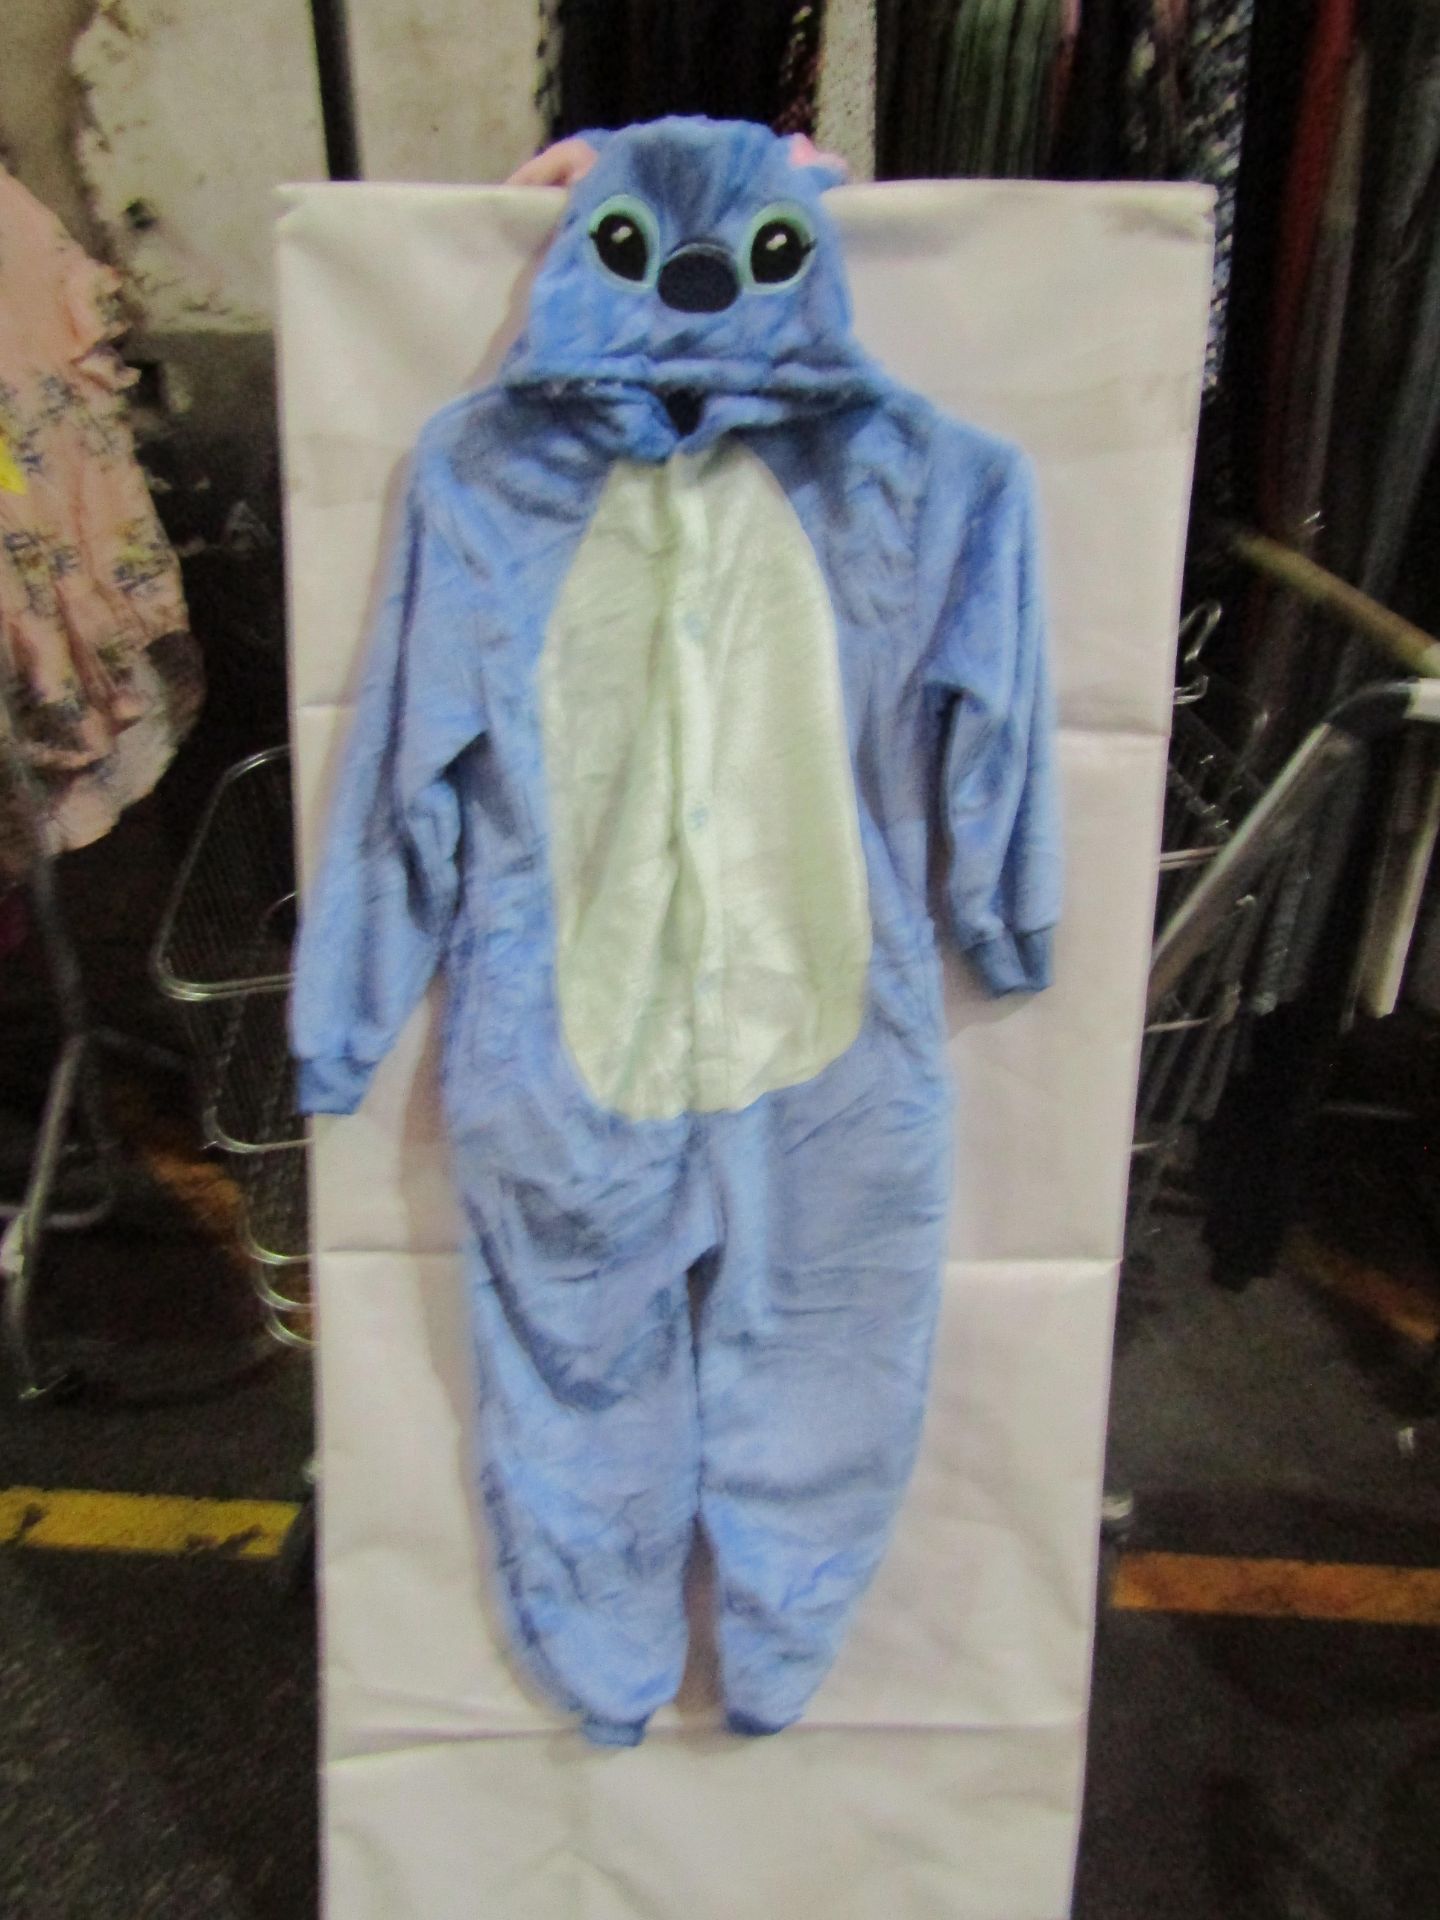 5x Onesie Pyjama - Size 115/130 - New & Packaged.